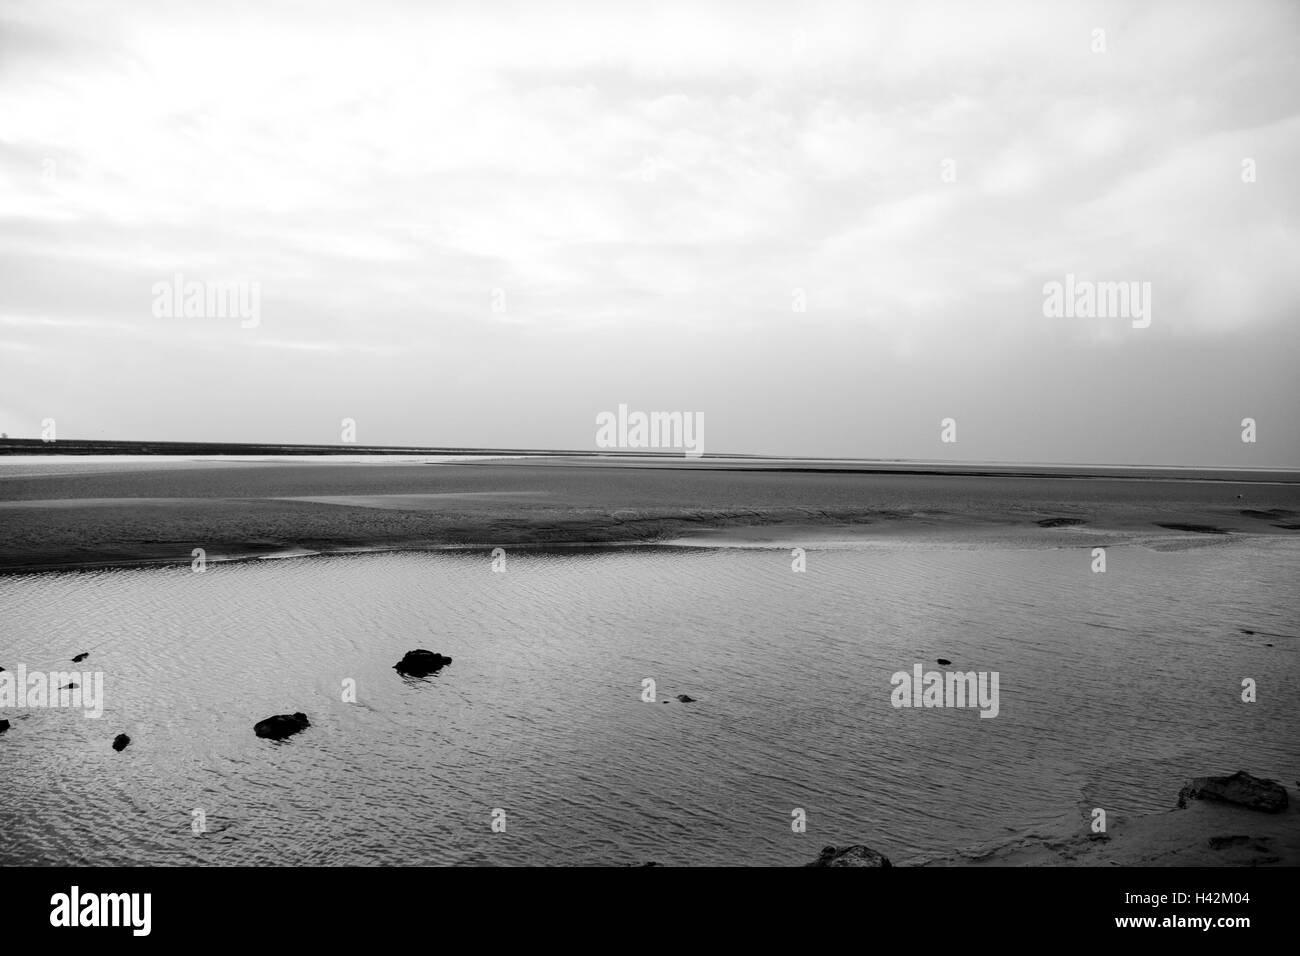 Francia, Normandia, costa atlantica, la bassa marea, b/w, Foto Stock